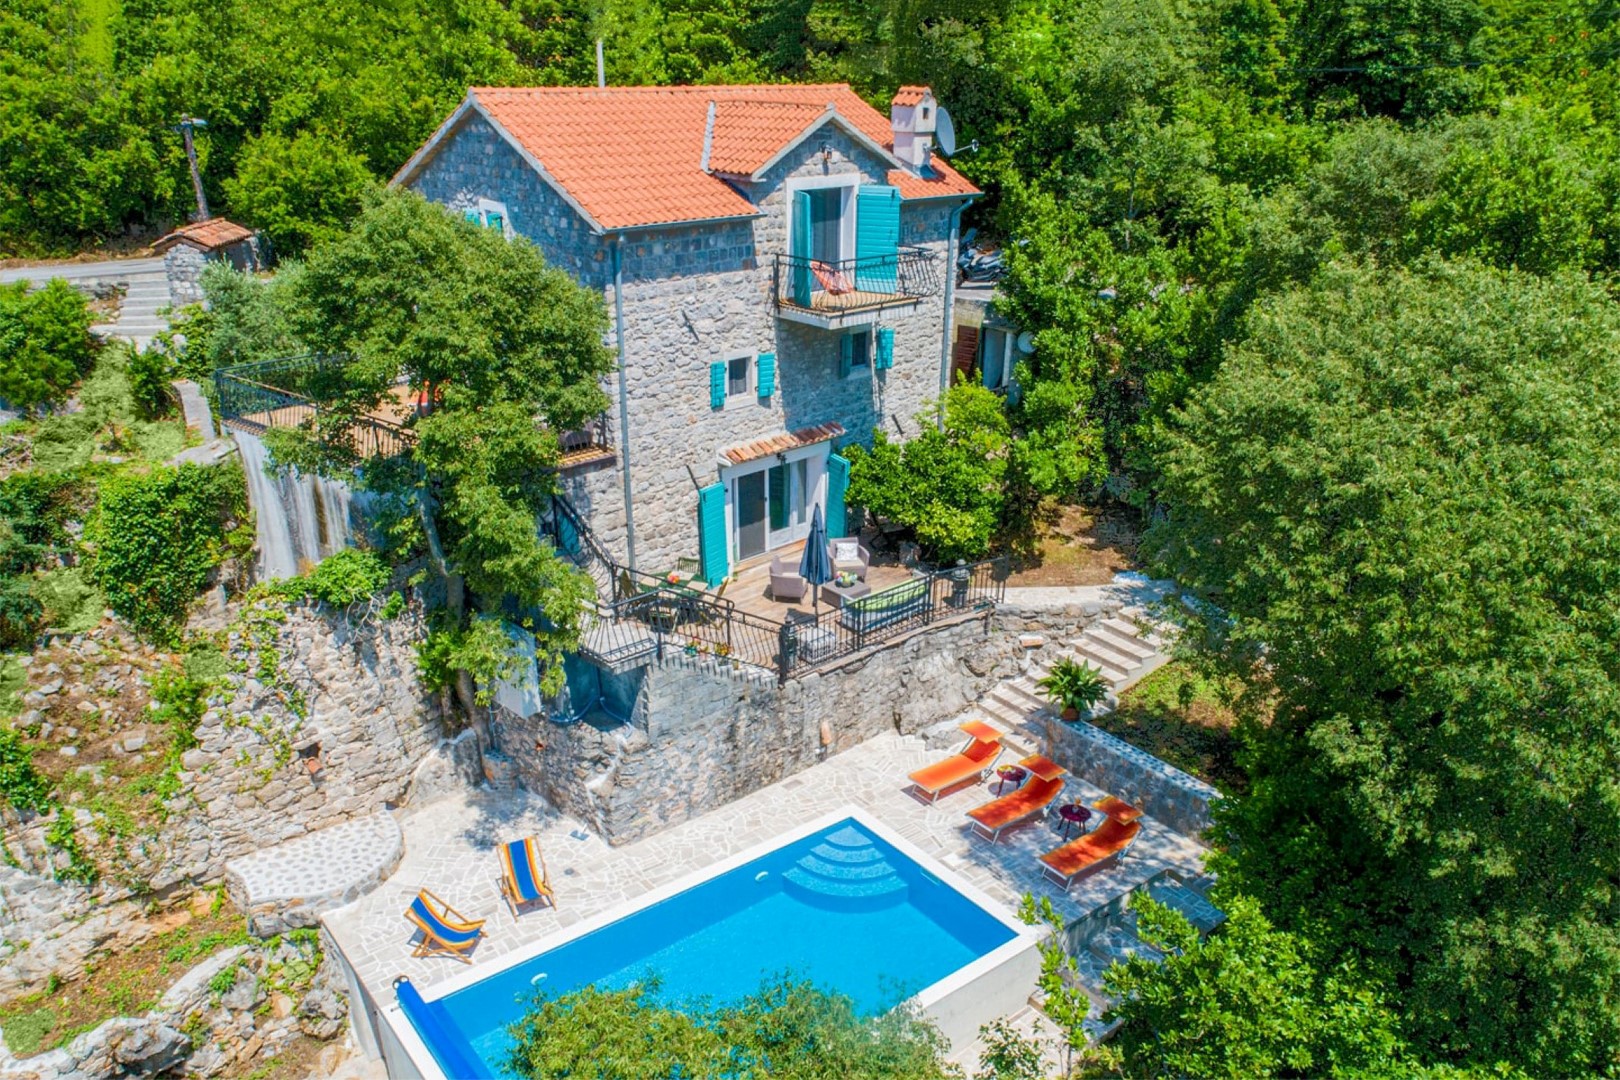 Луштица, Миловичи — роскошно отреставрированный каменный дом с бассейном